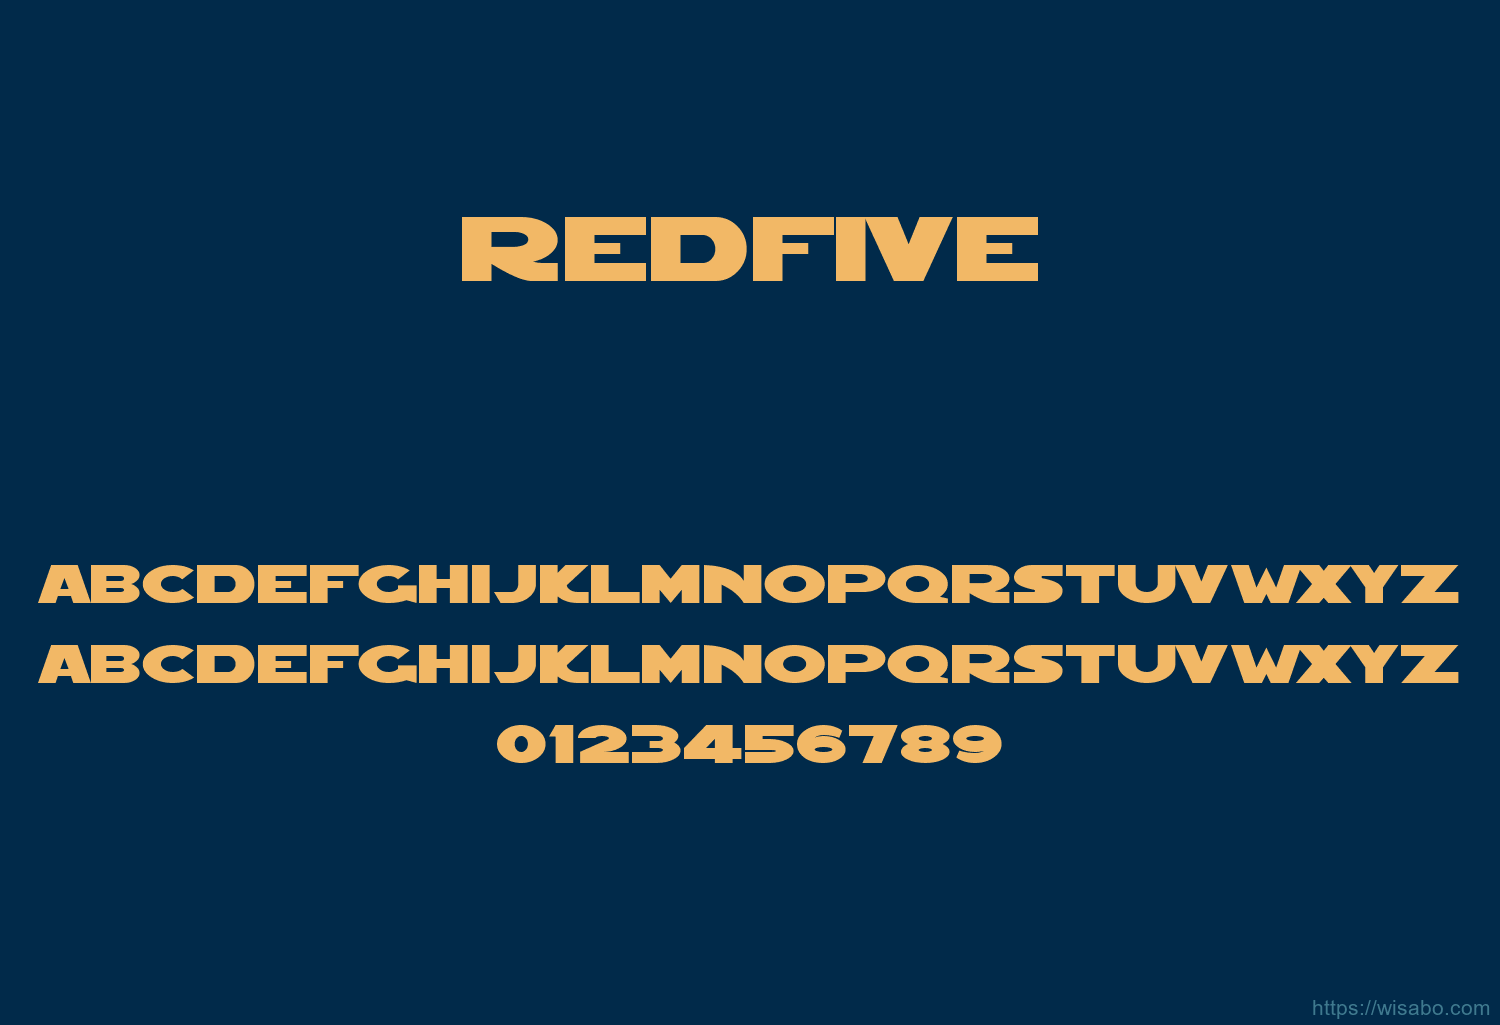 Redfive